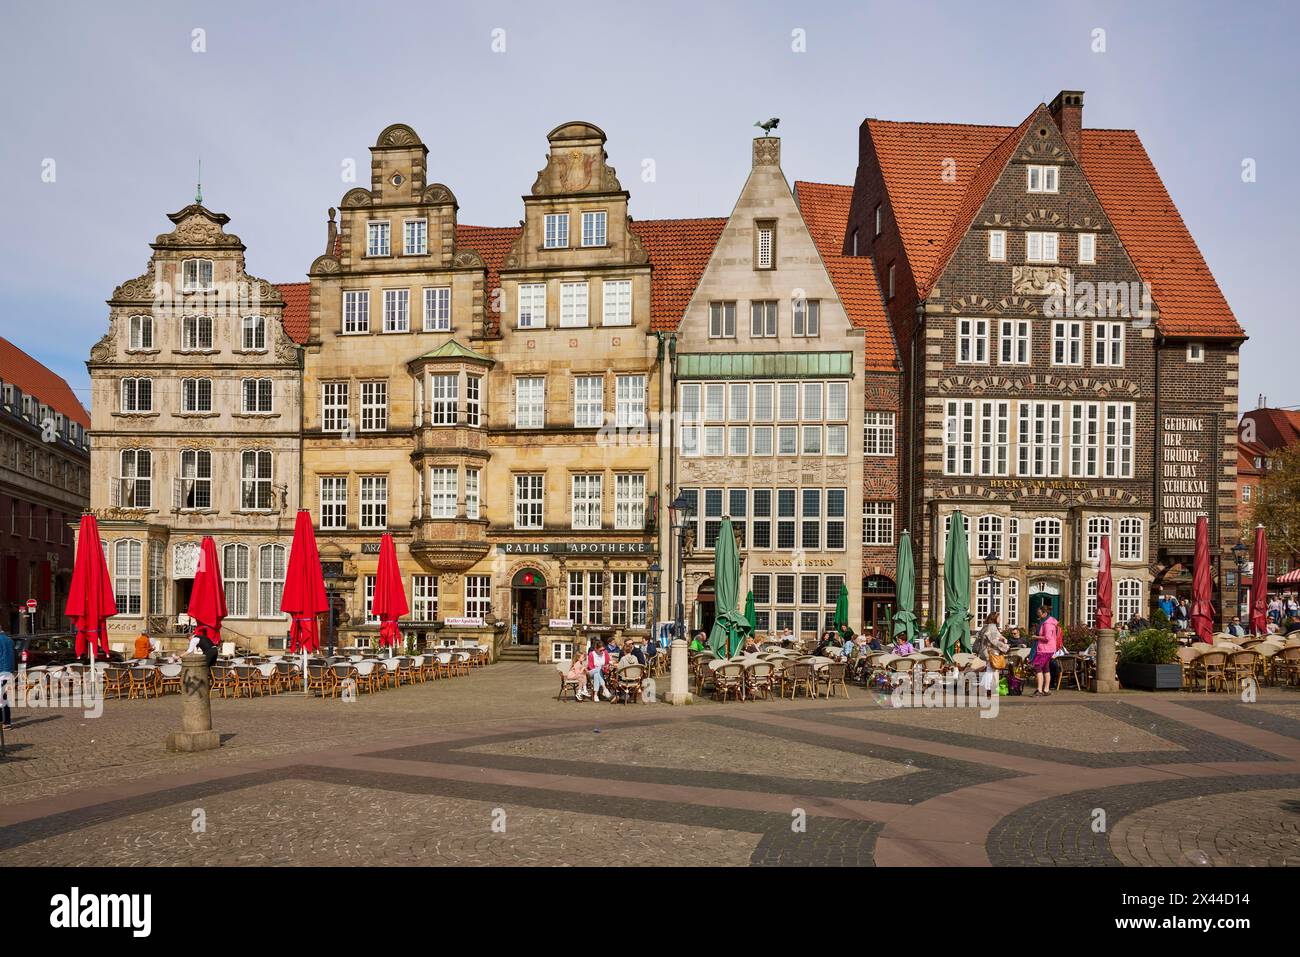 Maisons à pignons classées sur le côté nord-ouest de la place du marché de Brême à Brême, ville hanséatique, État fédéral de Brême, Allemagne Banque D'Images